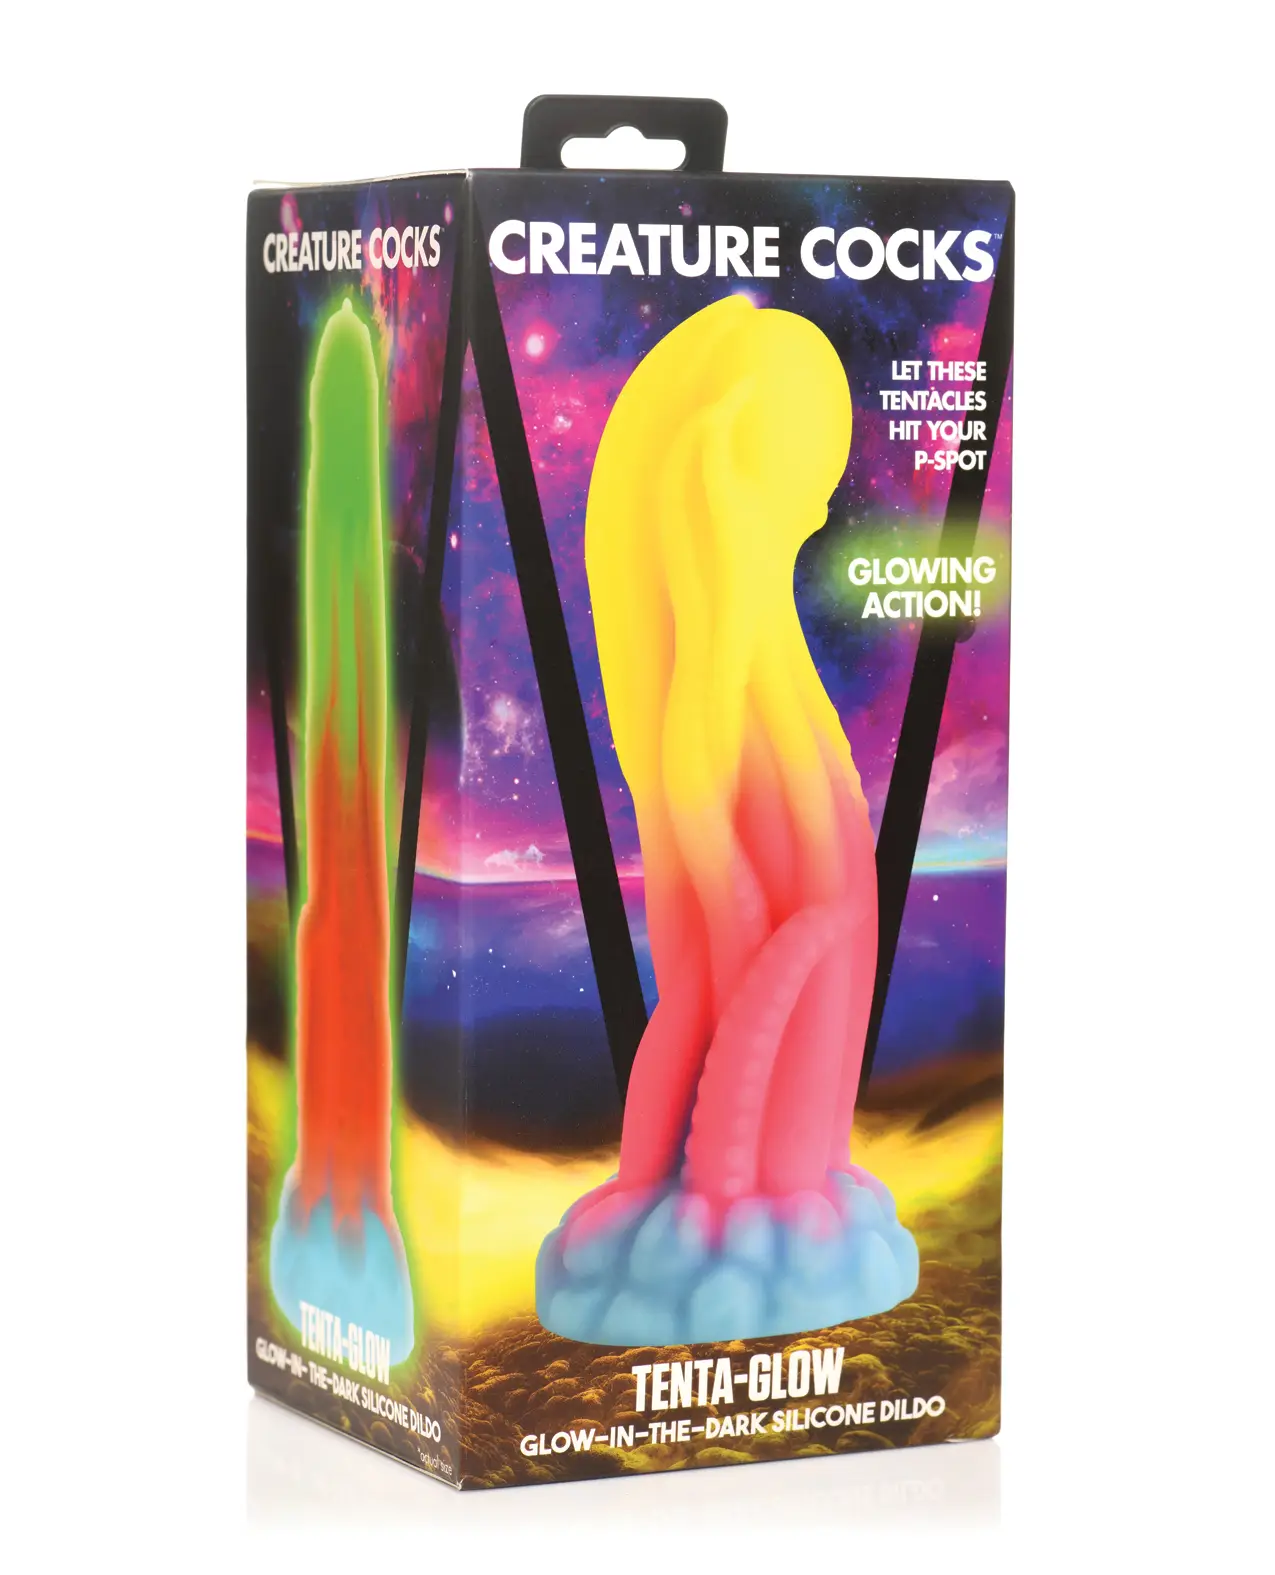 Creature Cocks Tenta-Glow-in-the-Dark Silicone Dildo